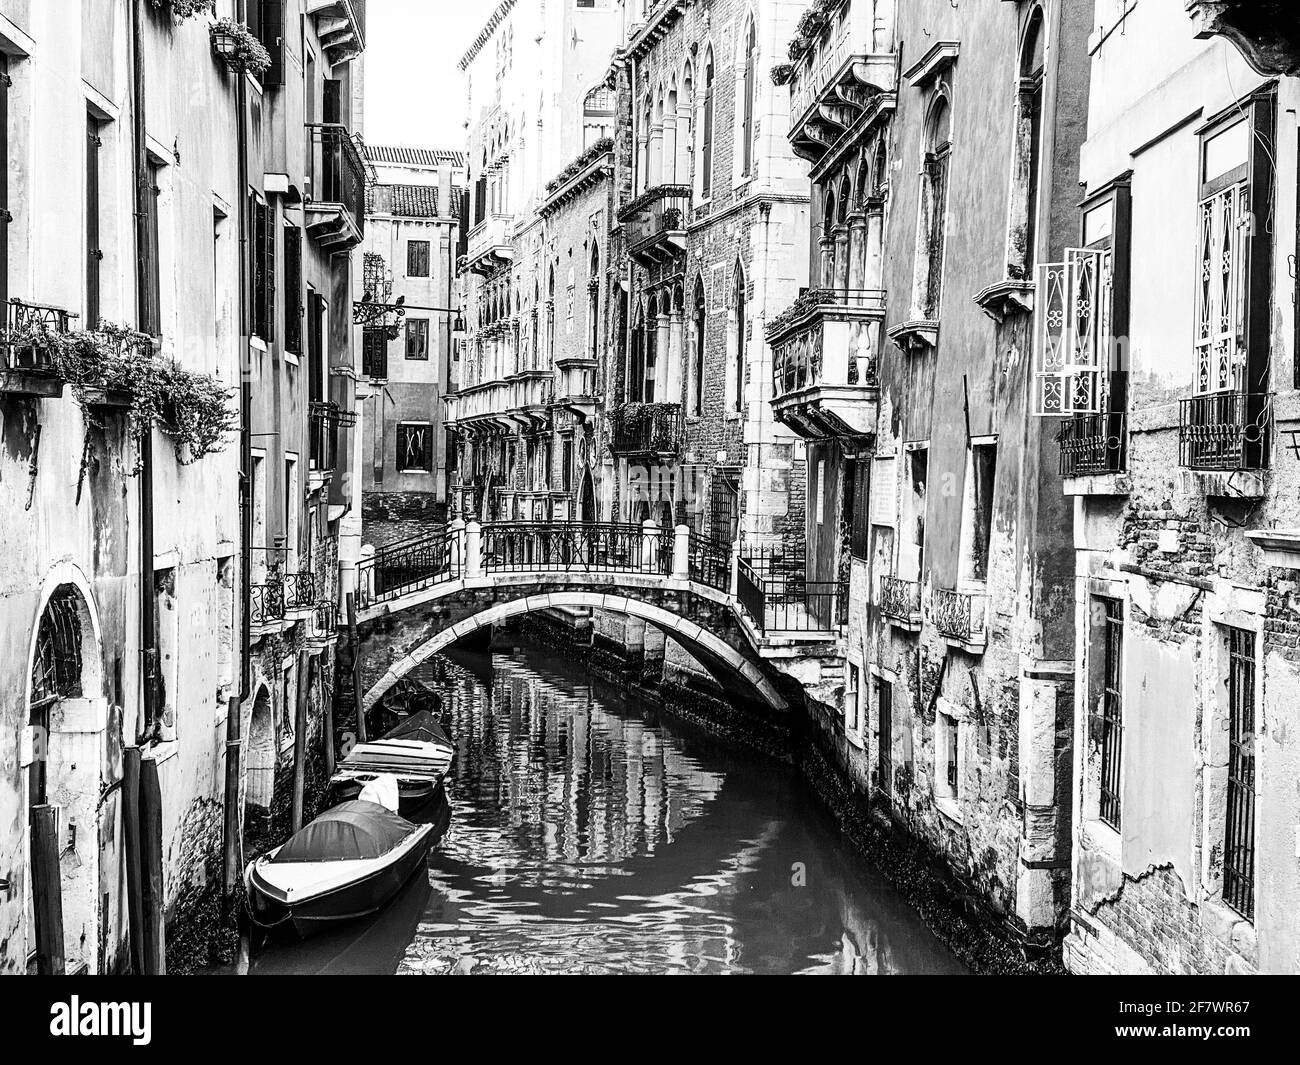 Magnifique pont sur un petit canal bordé, sur fond de bâtiment coloré, Venise, Italie, pendant la crise de Lockdown COVID-19 Banque D'Images